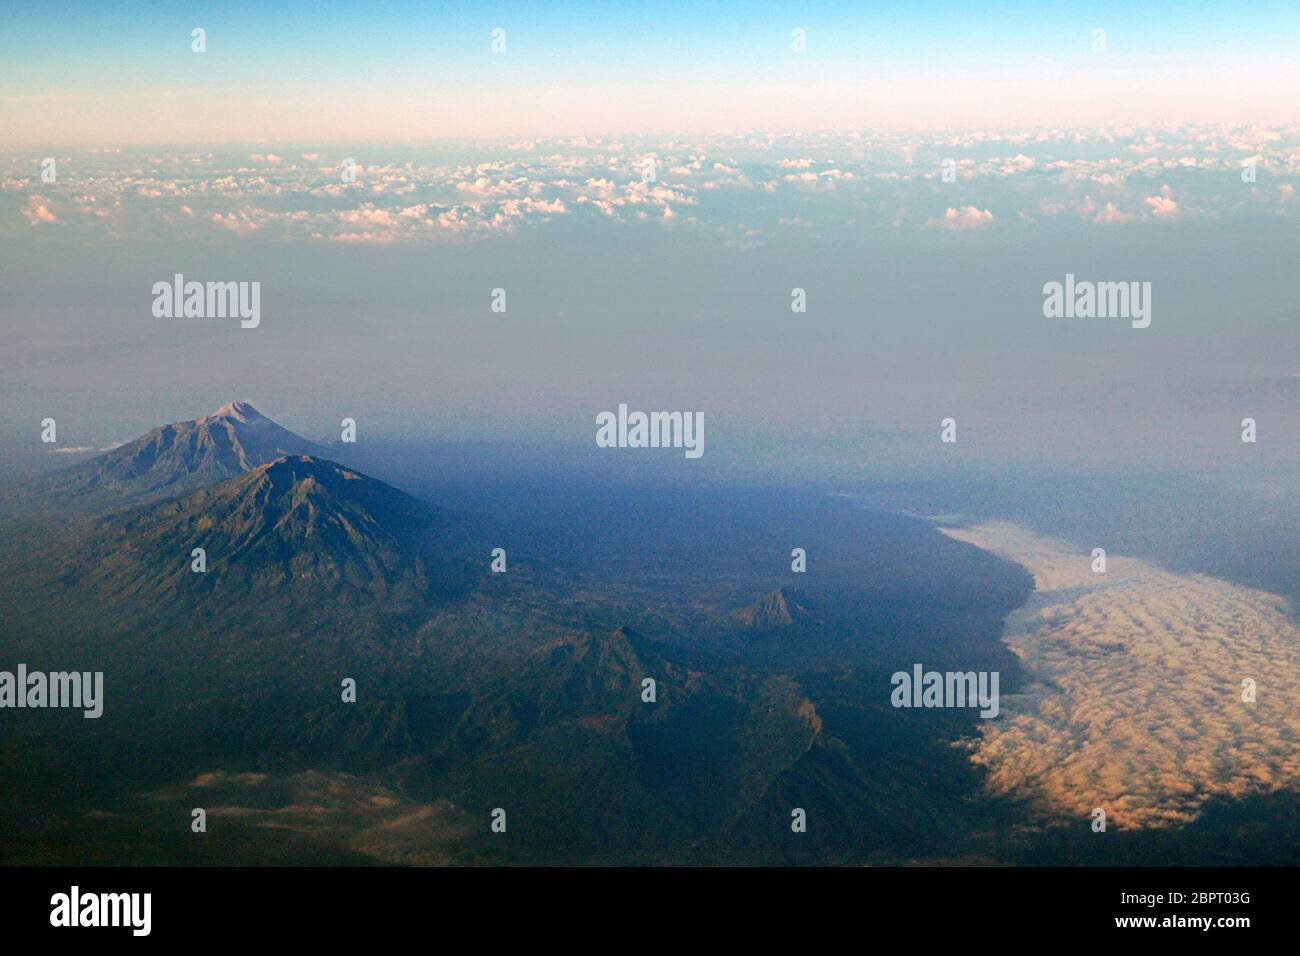 Monte Merbabu (fronte) e Monte Merapi (sfondo). Vista aerea da un volo. Foto di archivio. Provincia centrale di Giava, Indonesia. Foto Stock